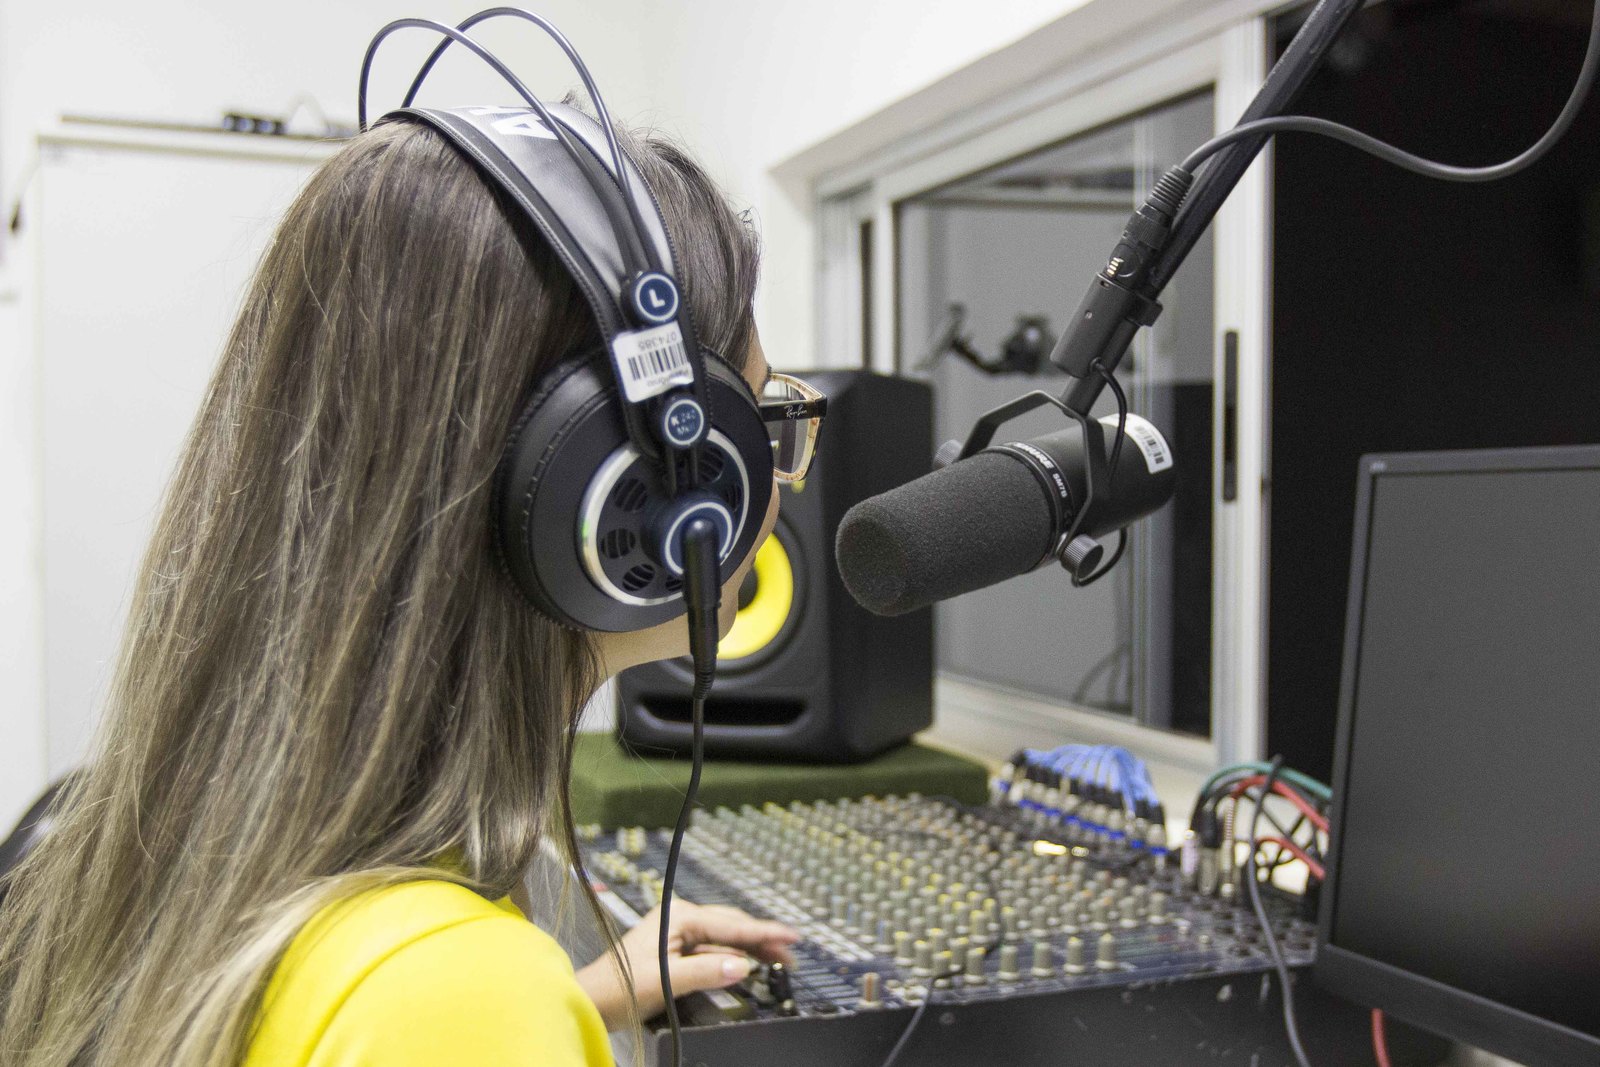 Mulher de costas, cabelo liso, com fone de ouvido estilo headphone, em frente a um microfone  condensador e um computador. Ao seu lado esquerdo está uma mesa de som e um caixa de som.